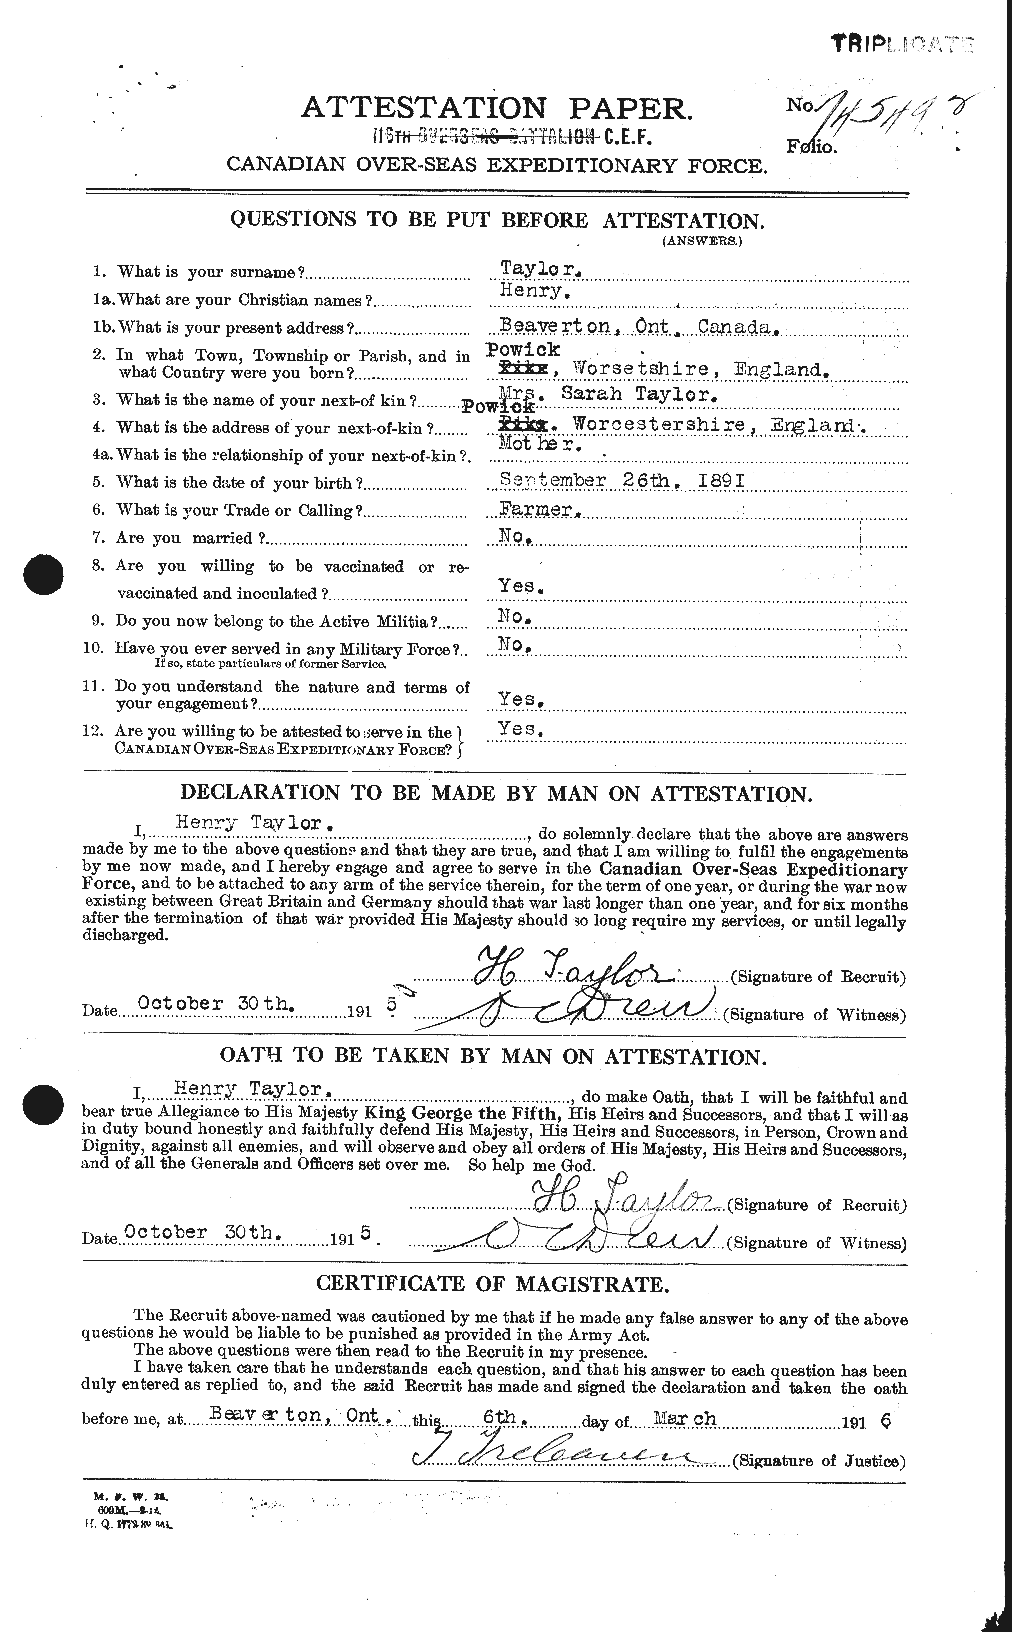 Dossiers du Personnel de la Première Guerre mondiale - CEC 626520a